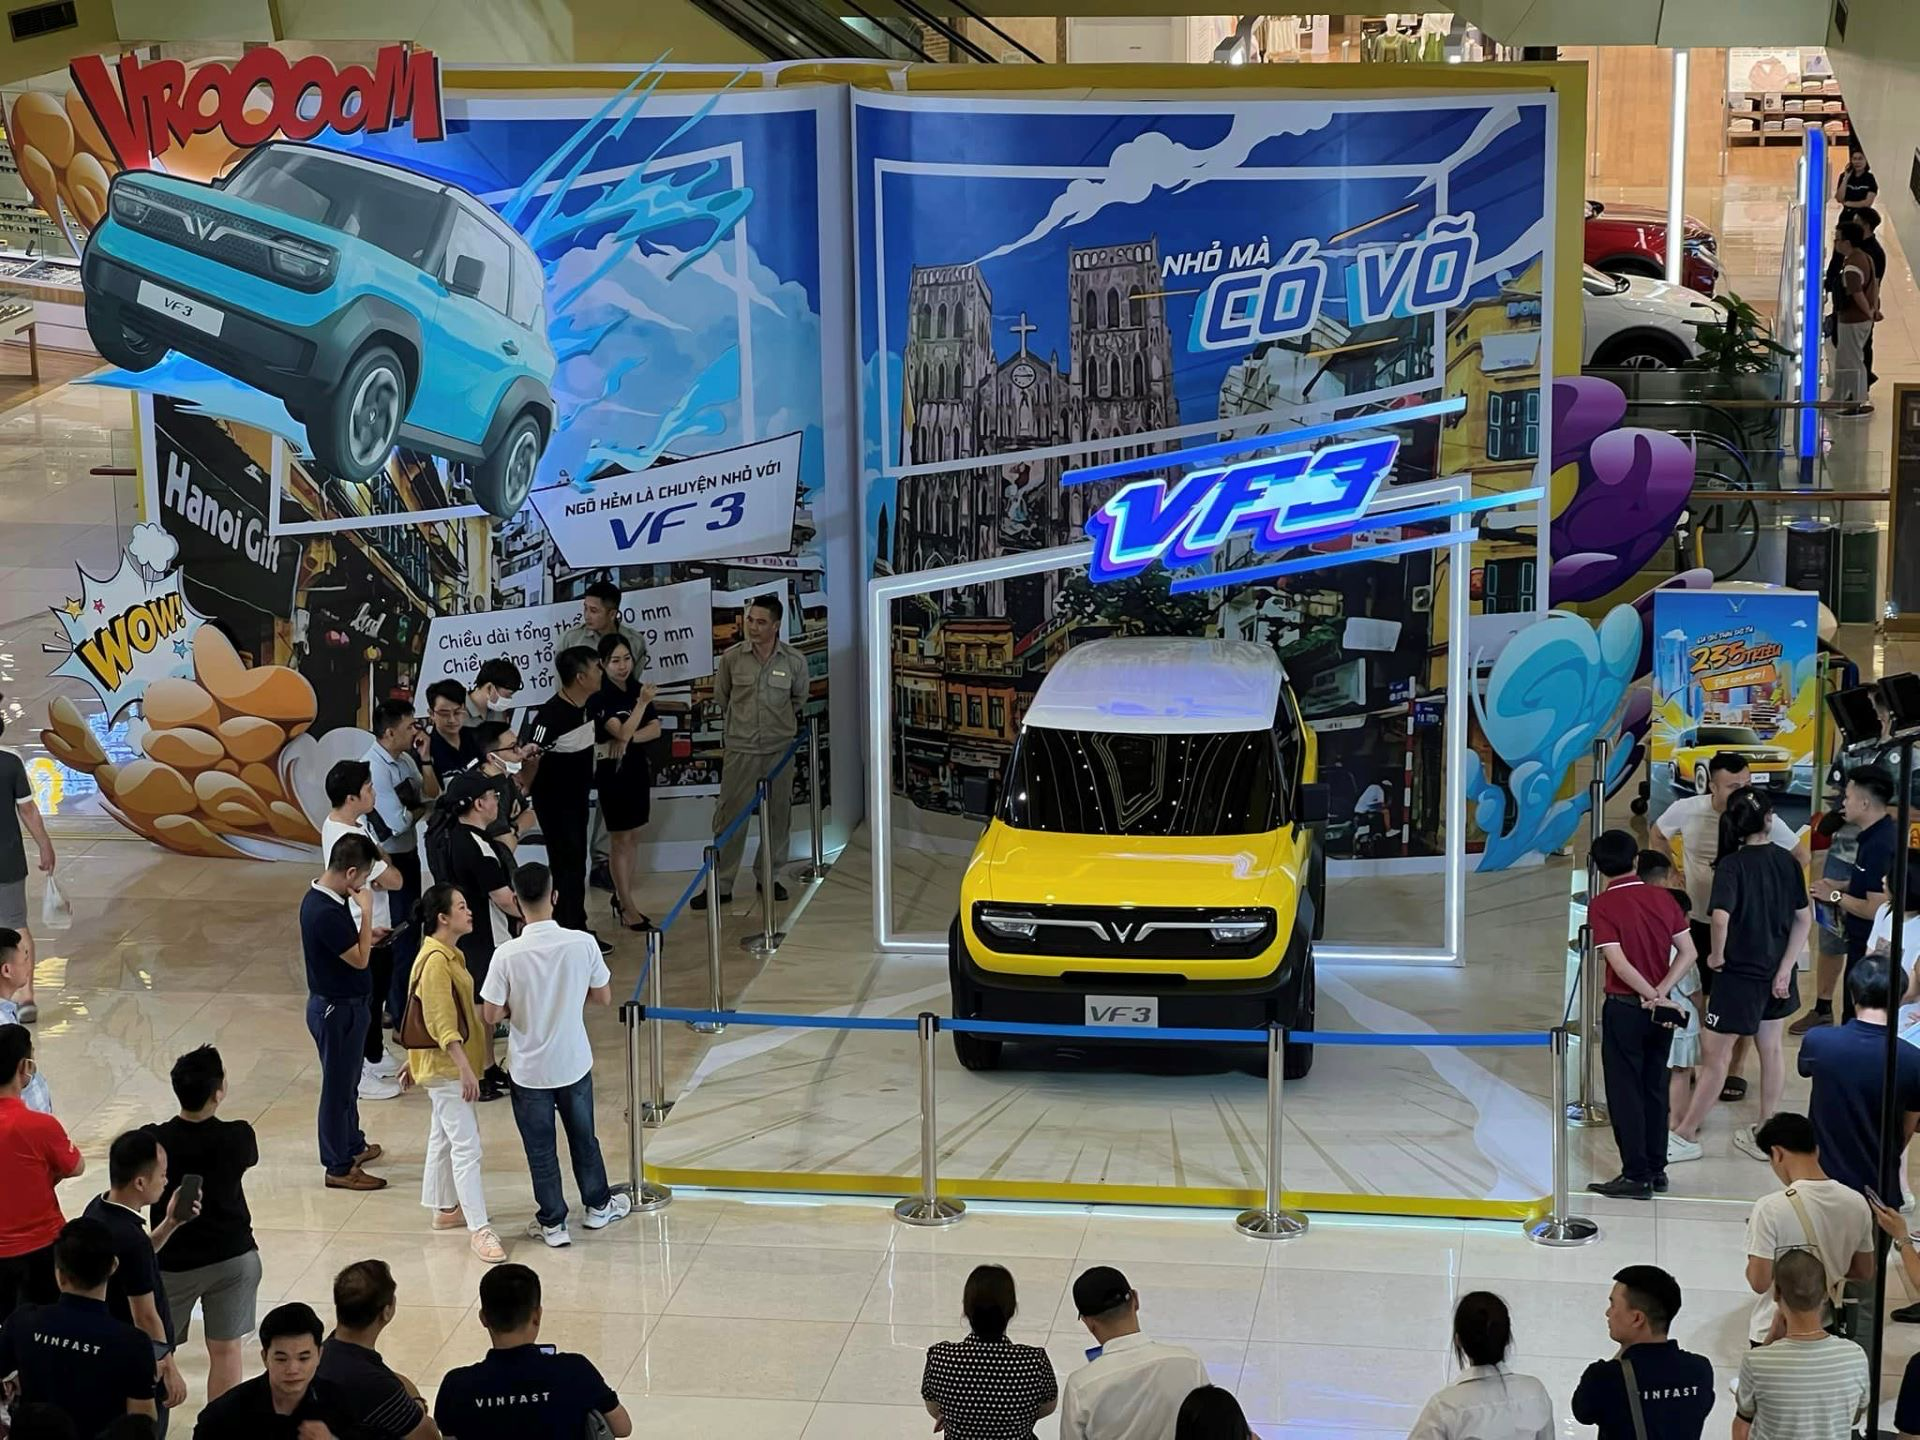 Kỷ lục thị trường ô tô Việt: Cứ hơn 8 giây có một người chốt cọc VF 3- Ảnh 1.